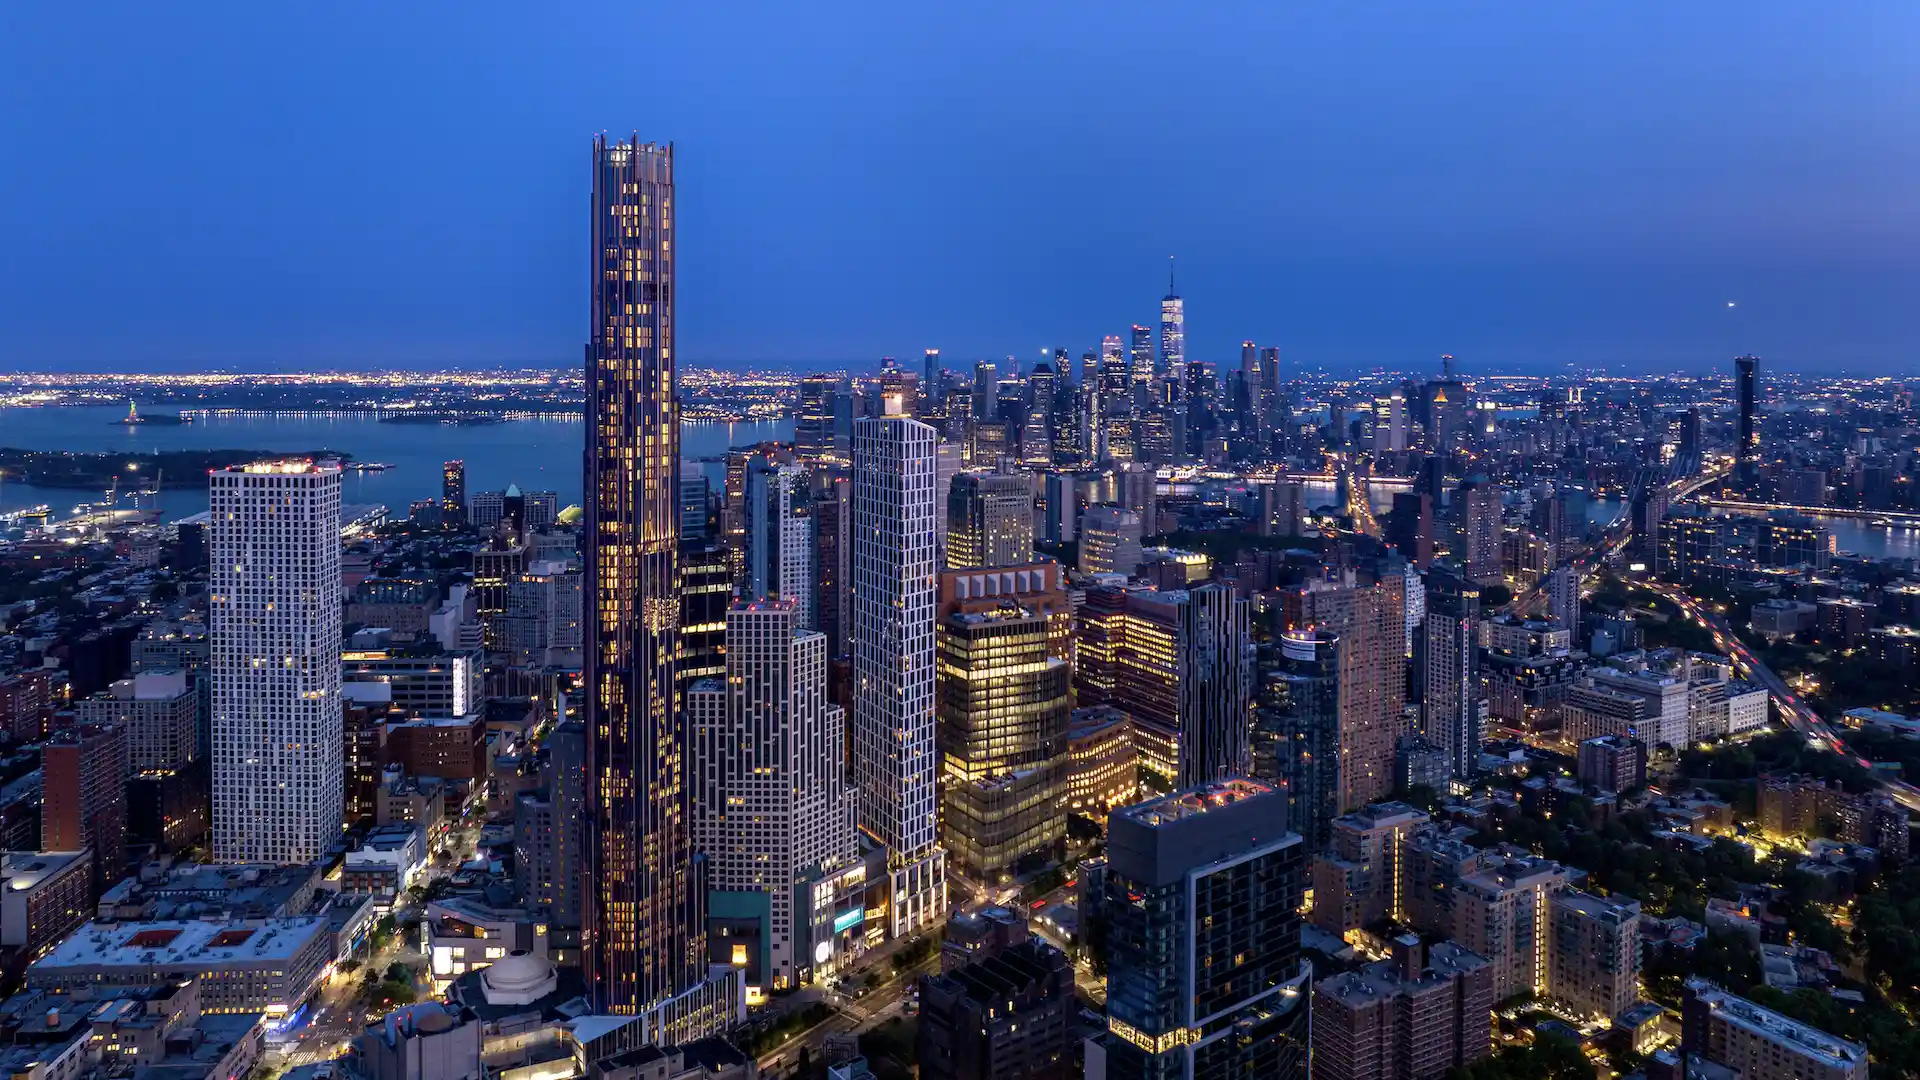 Ya está listo The Brooklyn Tower: el nuevo rascacielos de Nueva York